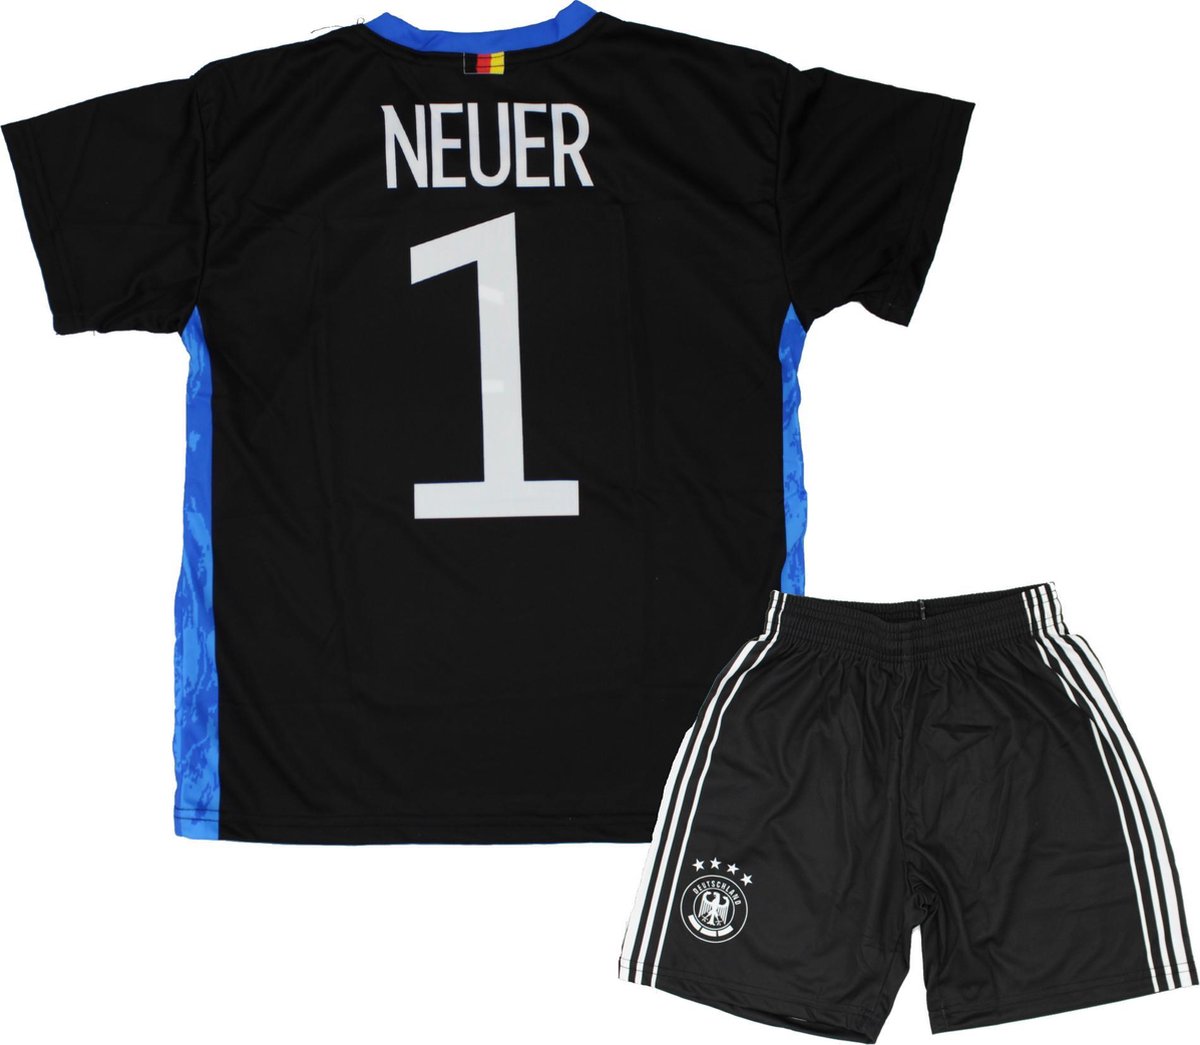 Neuer| Keepers Tenue 2021-2022 | Replica Voetbal Shirt + broekje set - Duitsland EK/WK voetbaltenue - Maat 128